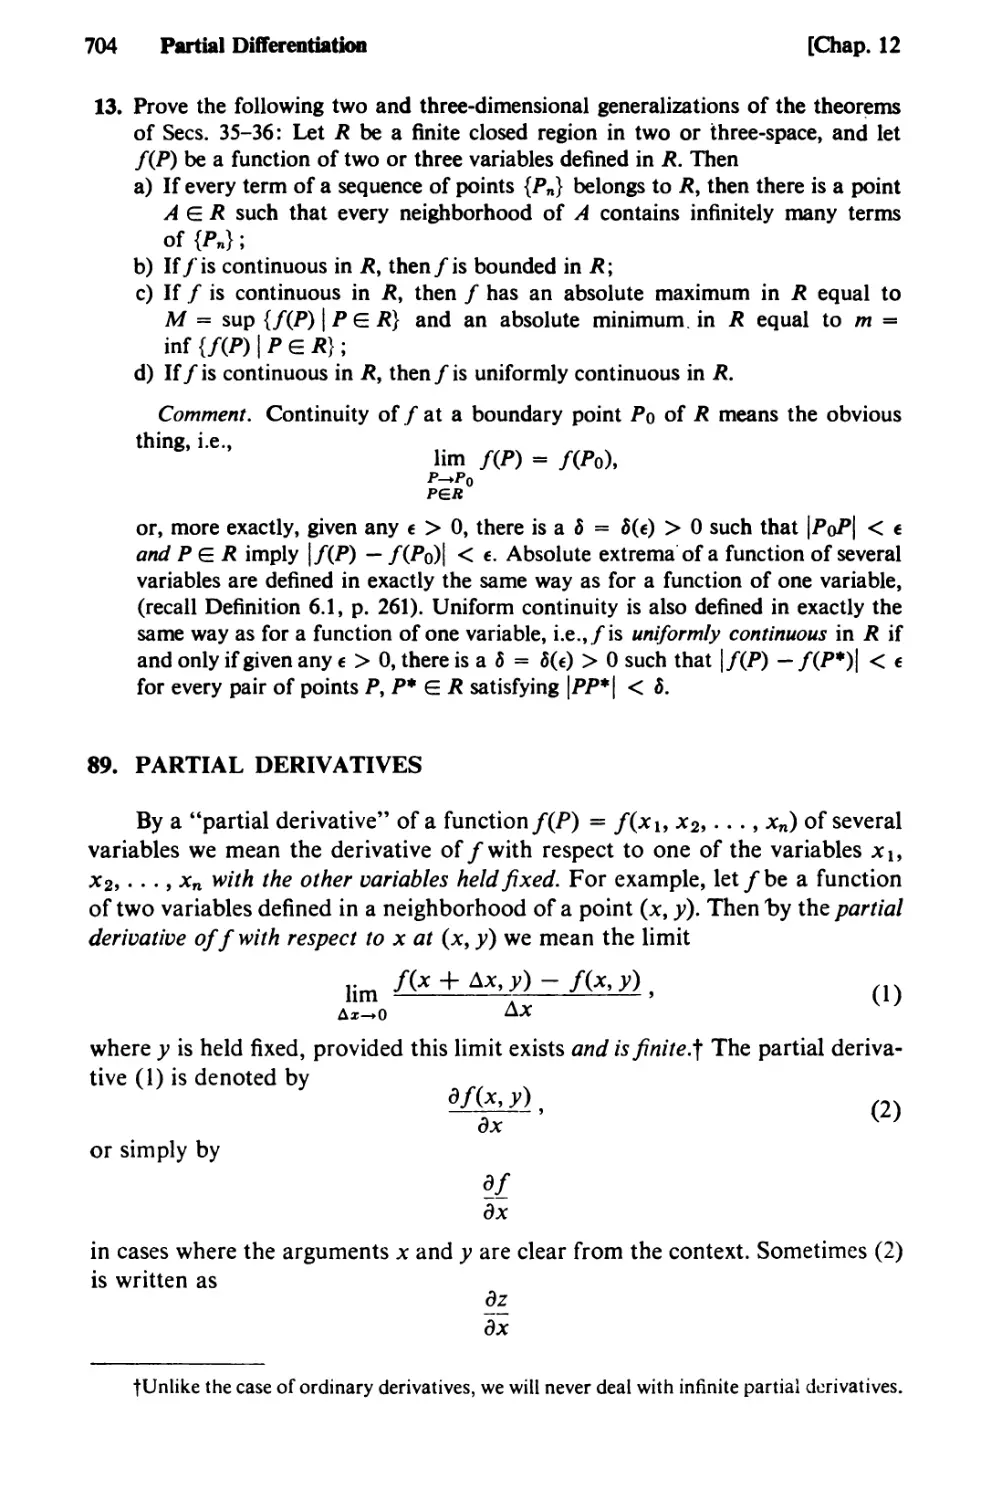 89. Partial Derivatives